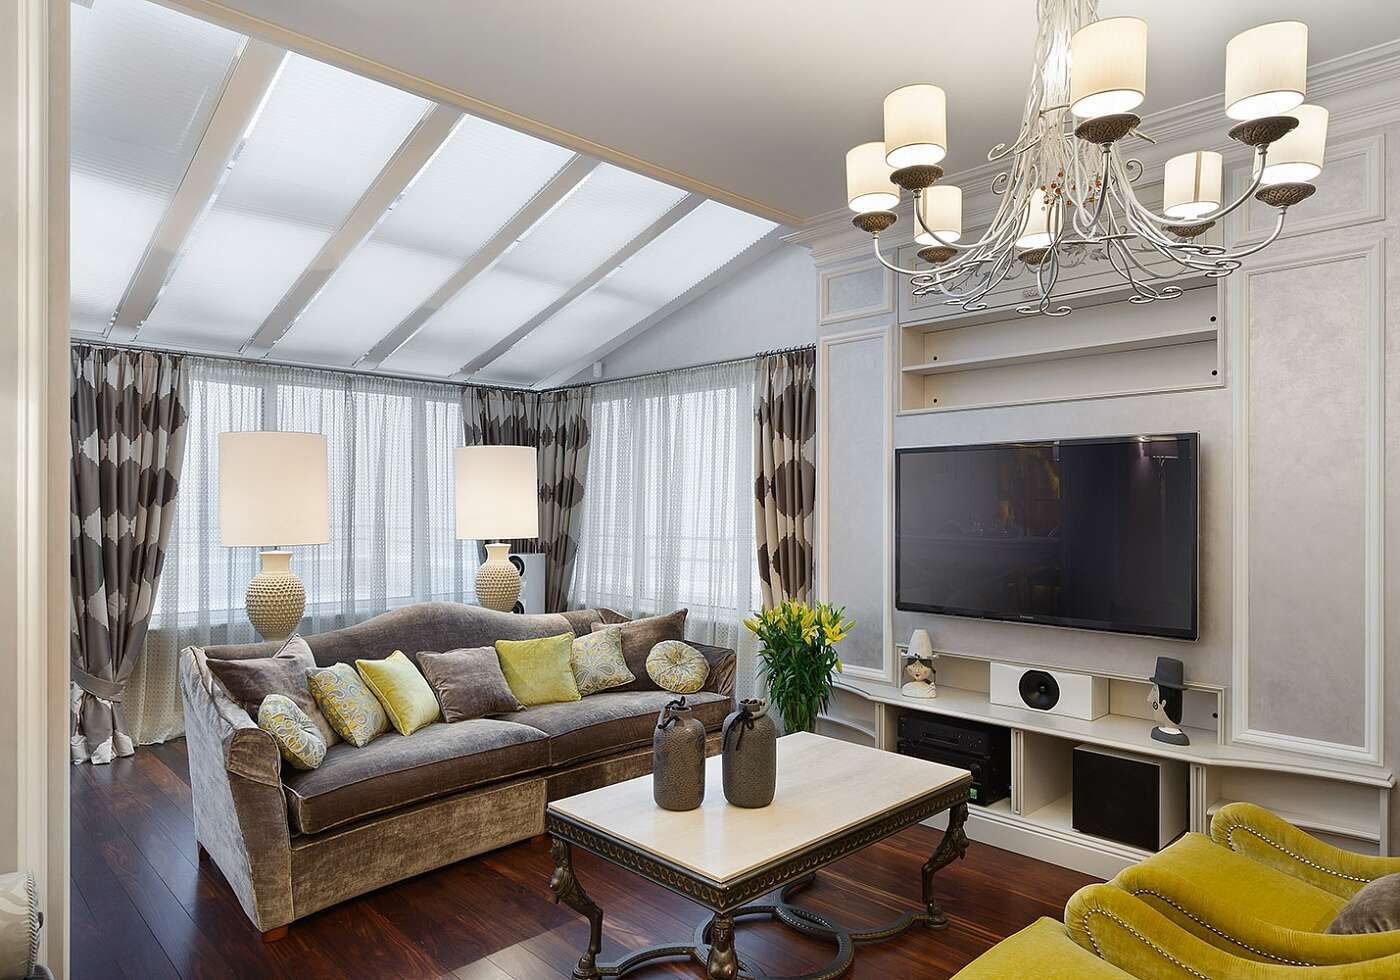 Appartamento privato - Ispirazione per un soggiorno contemporaneo con dettagli in giallo , Marioni srl Marioni srl ห้องนั่งเล่น เซรามิค